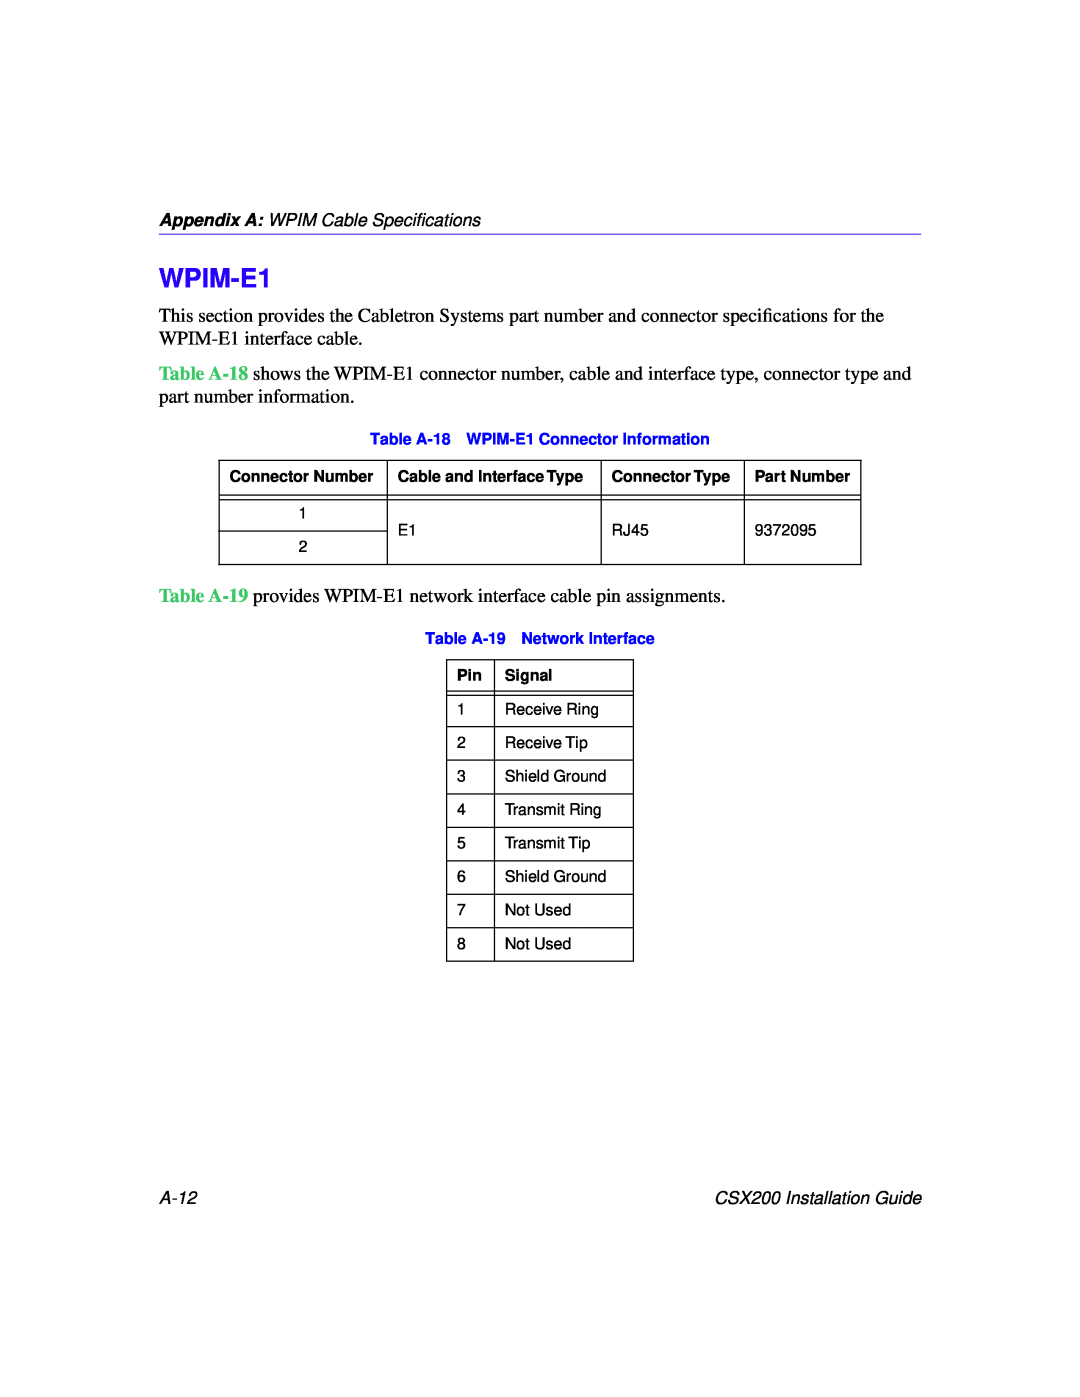 Cabletron Systems CSX200 manual WPIM-E1 